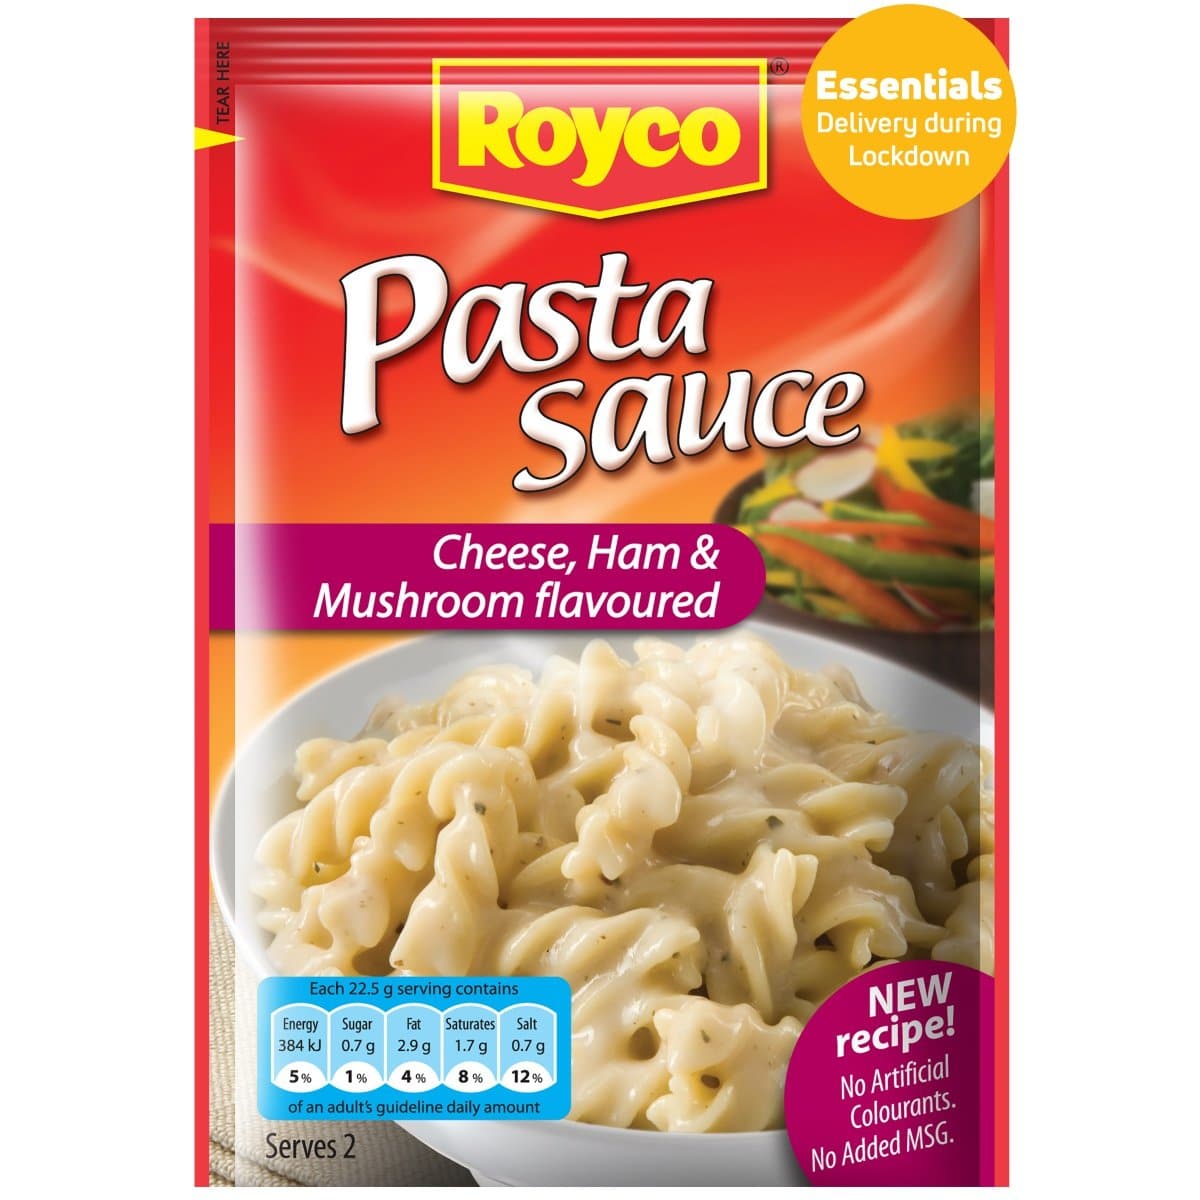 ROYCO Pasta Sauce Cheese Ham & Mushroom, 45g